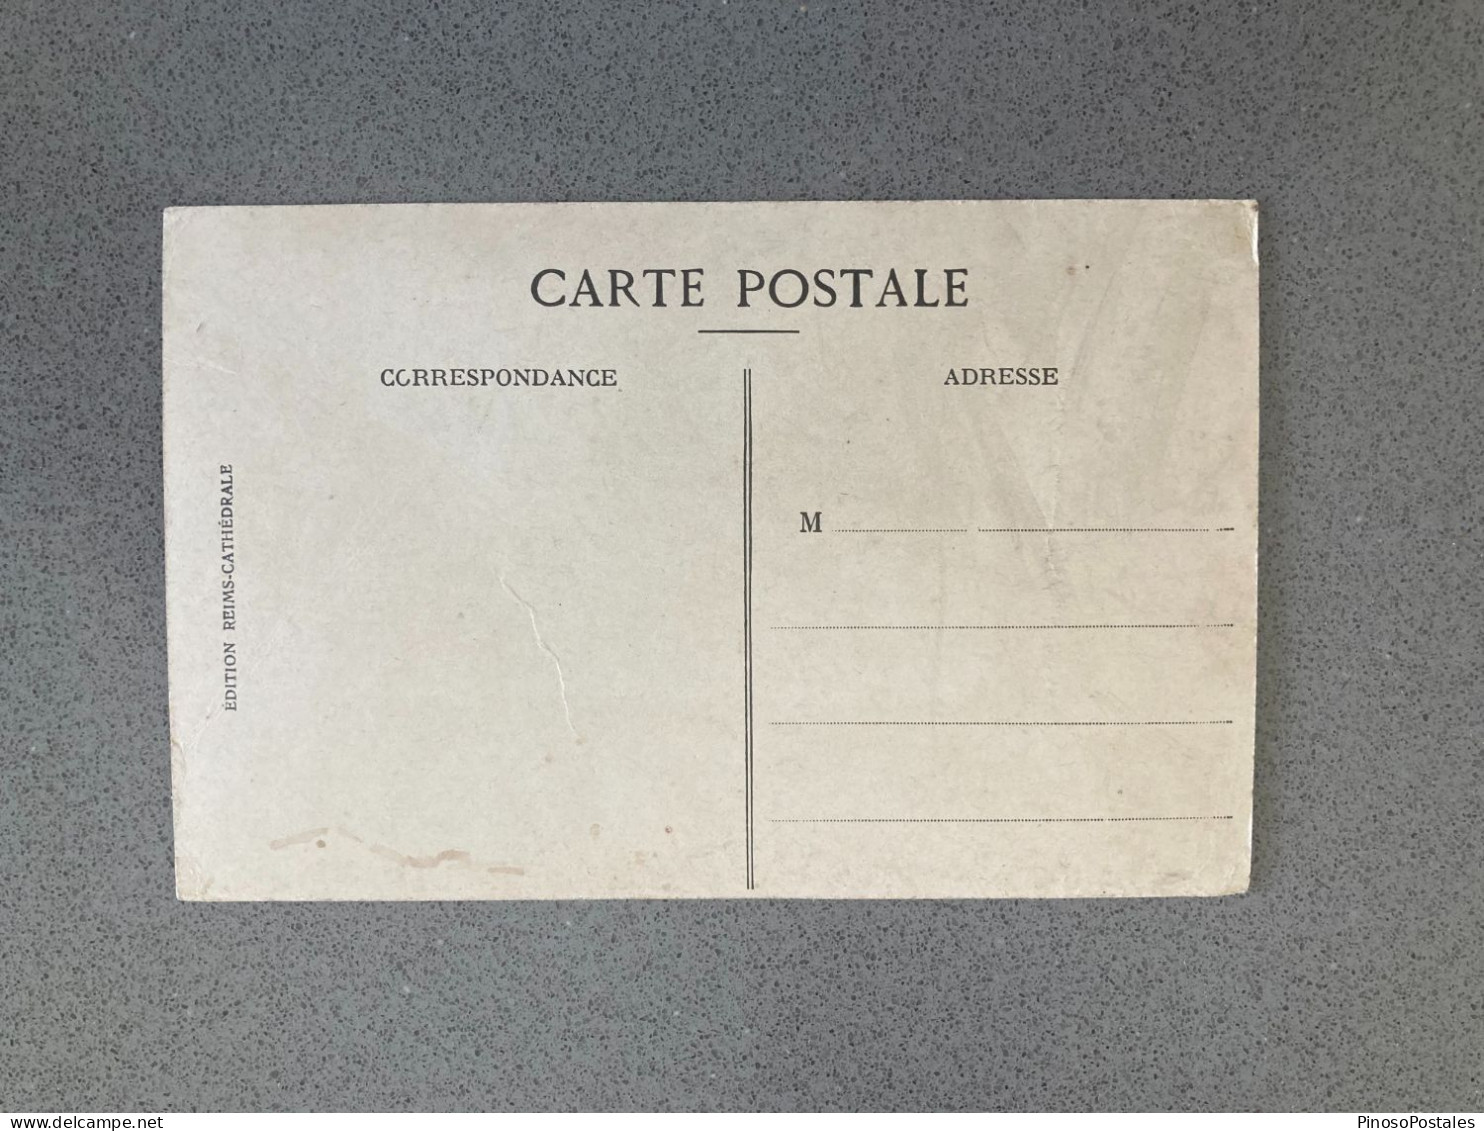 Reims - La Cathedrale Avant La Guerre Carte Postale Postcard - Reims